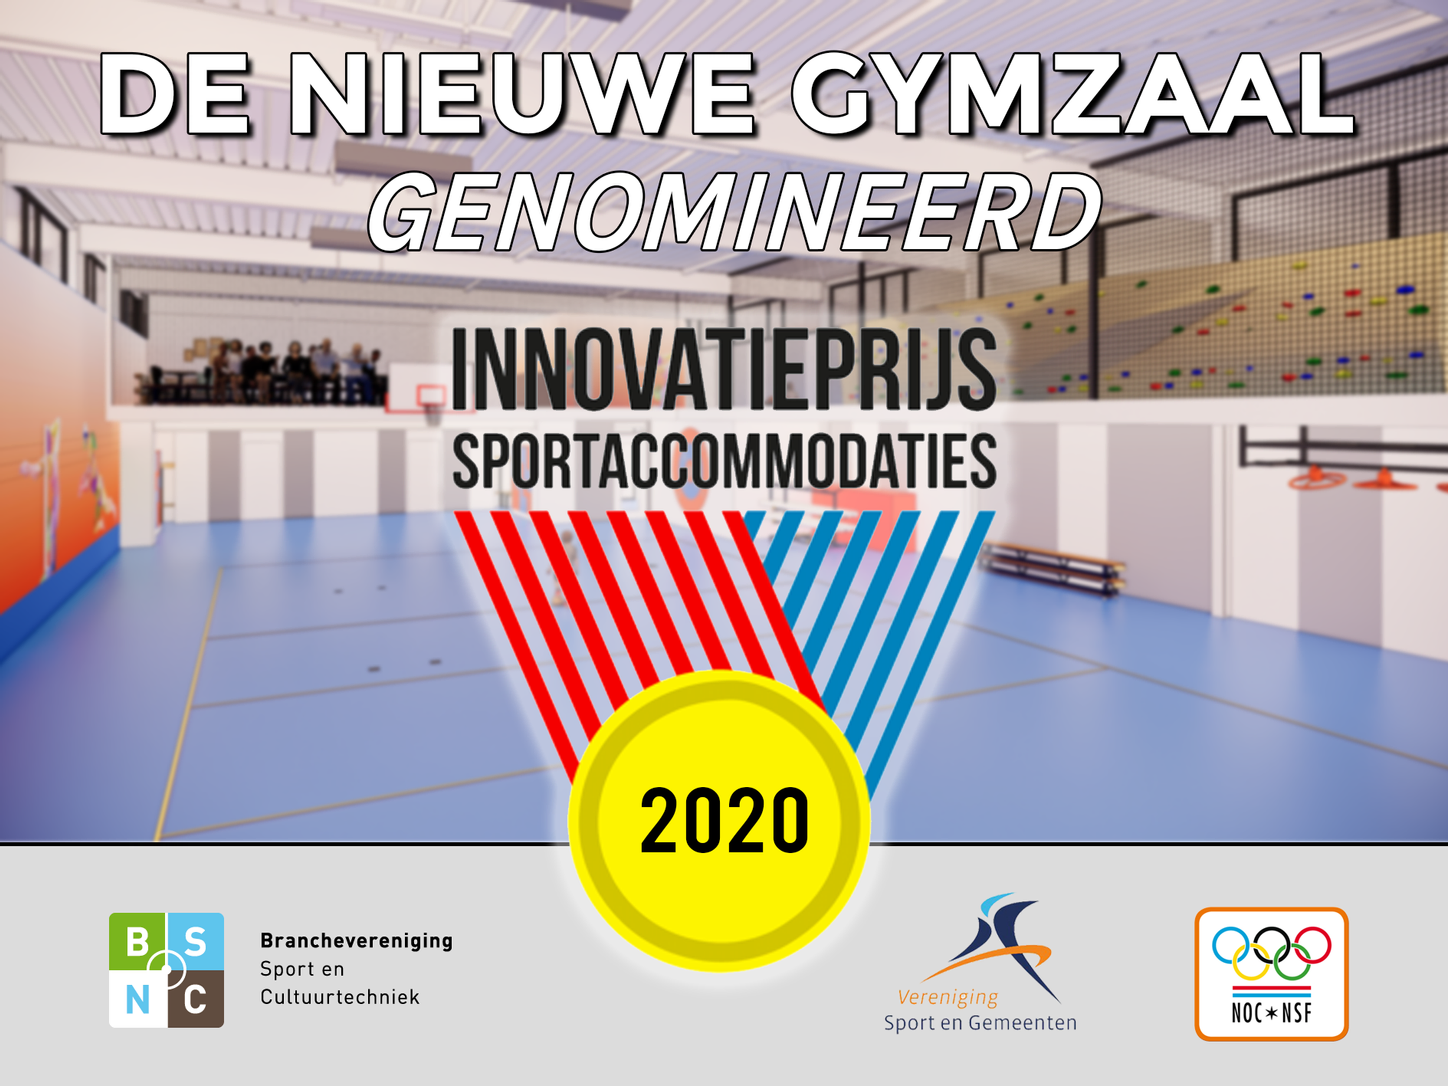 De Nieuwe Gymzaal genomineerd voor Innovatieprijs Sportaccommodaties